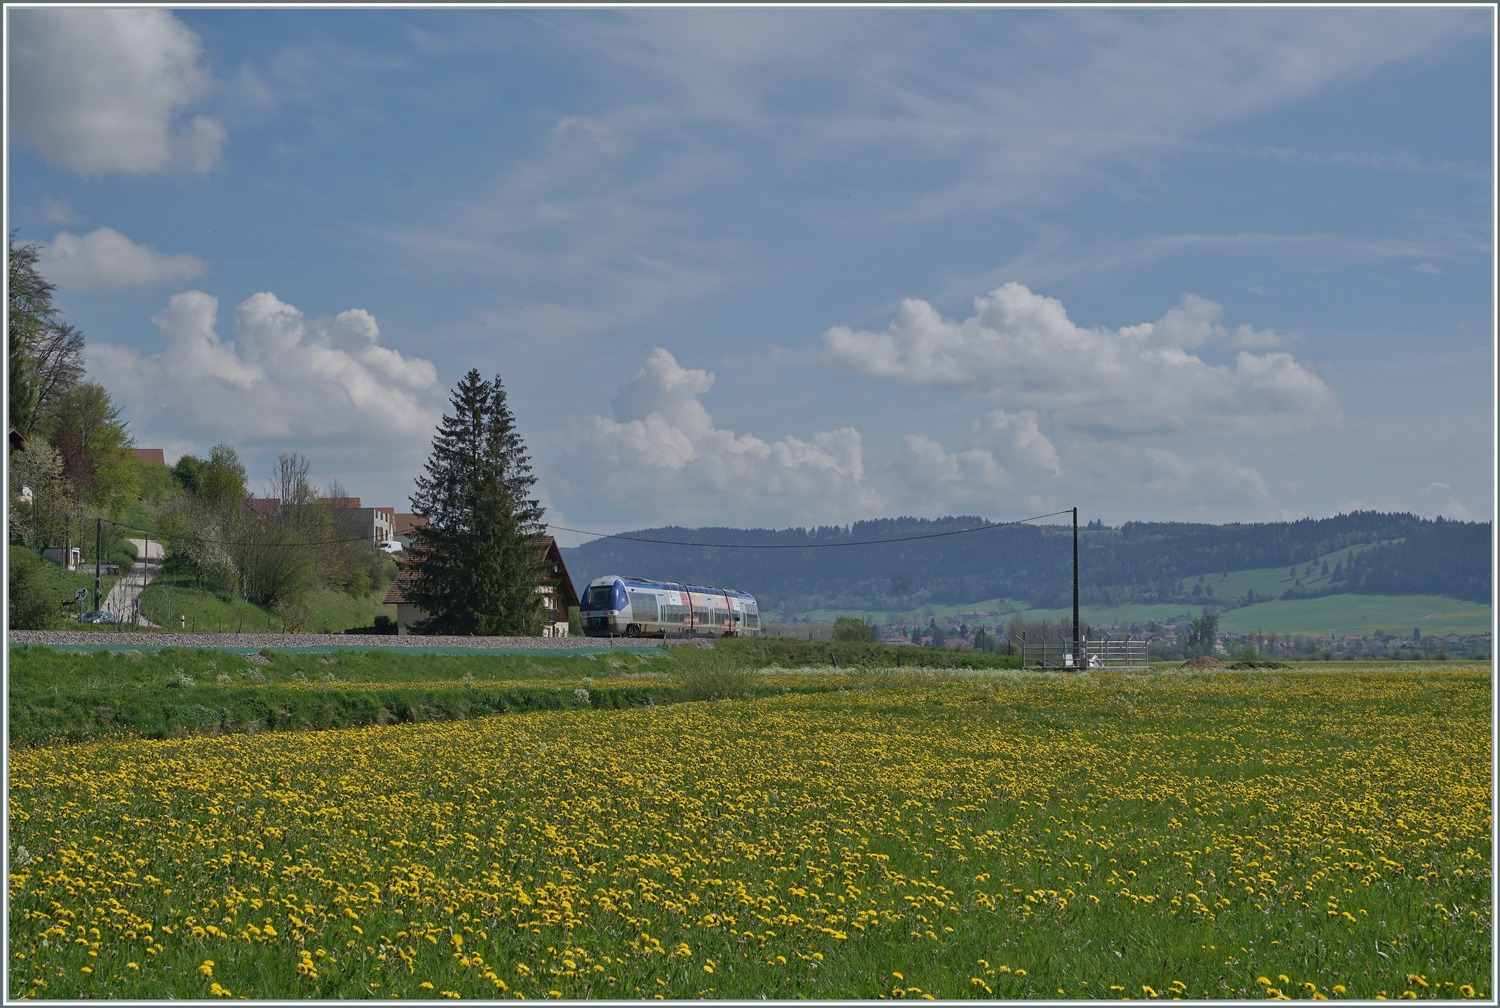 Der SNCF Dieseltriebwagen X 76713/714 ist als TER 18109 auf der Fahrt von Besançon Viotte nach La Chaux-de-Fonds und strebt kurz nach dem kleinen Weiler Pont de la Roche Morteau entgegen.

10. Mai 2022